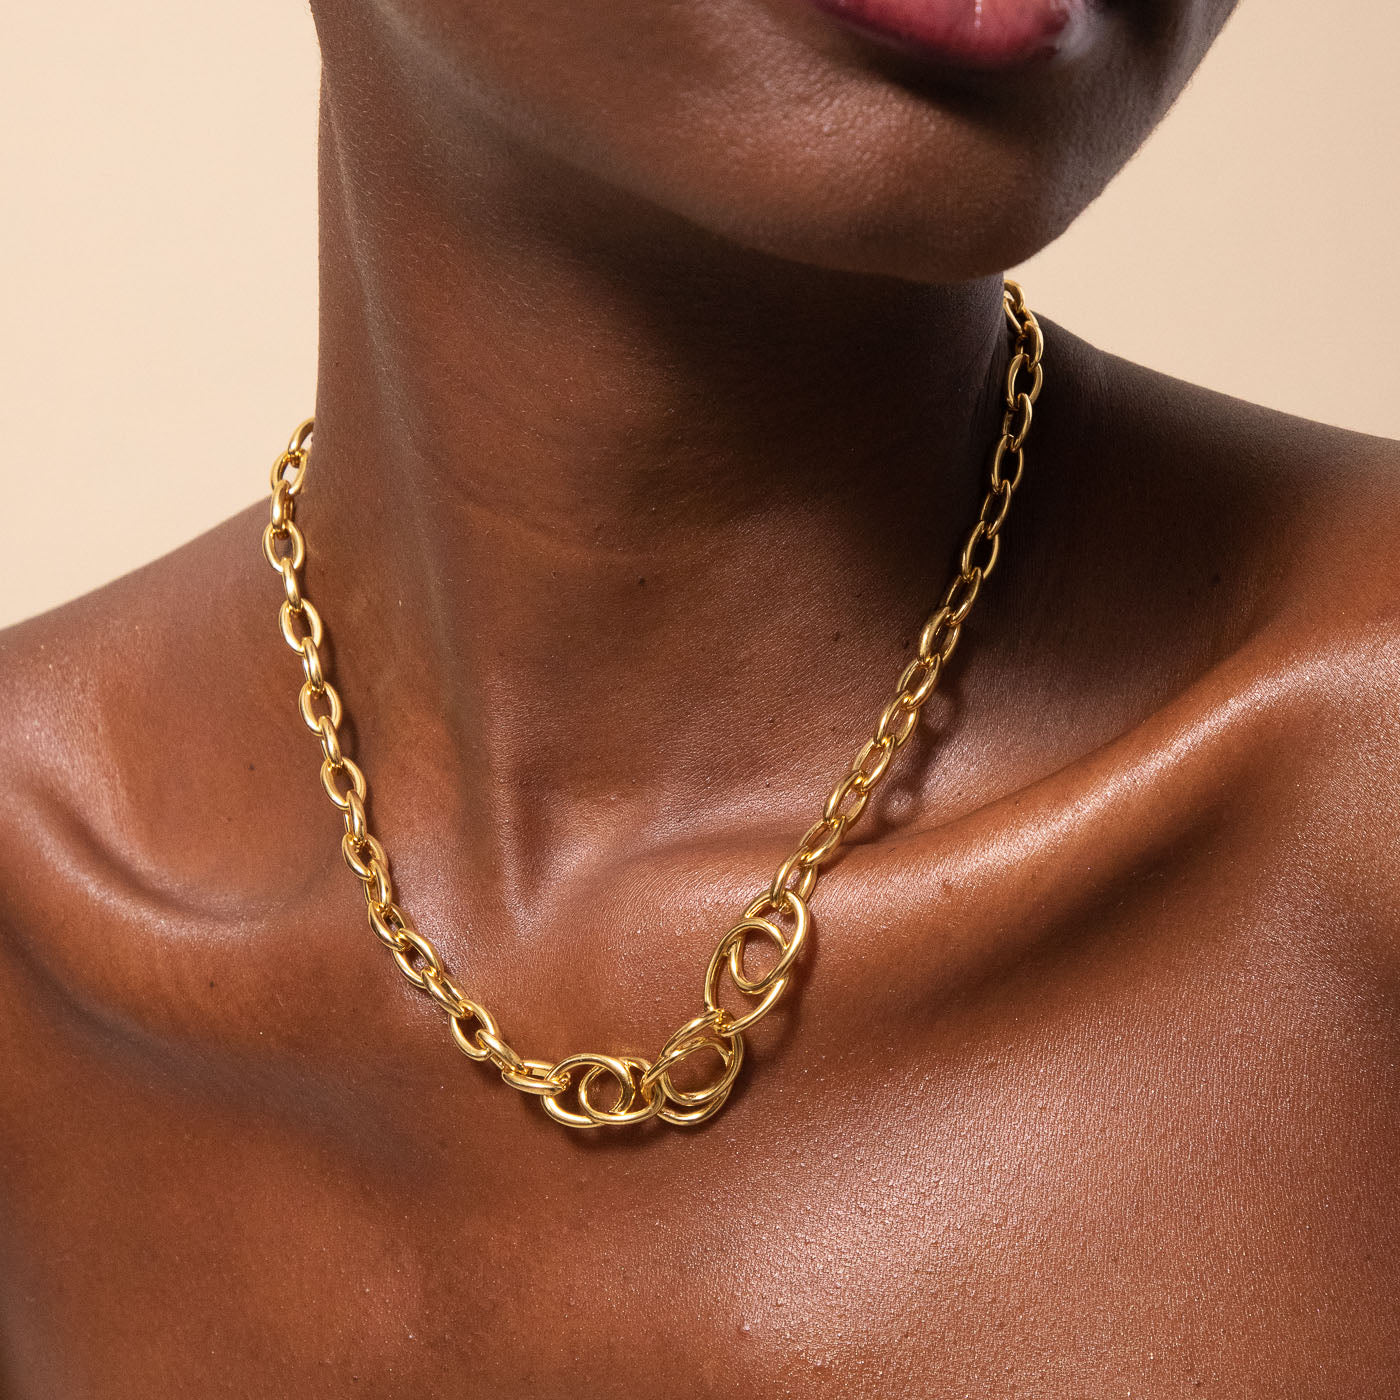 Orbit Chain Necklace in Gold worn